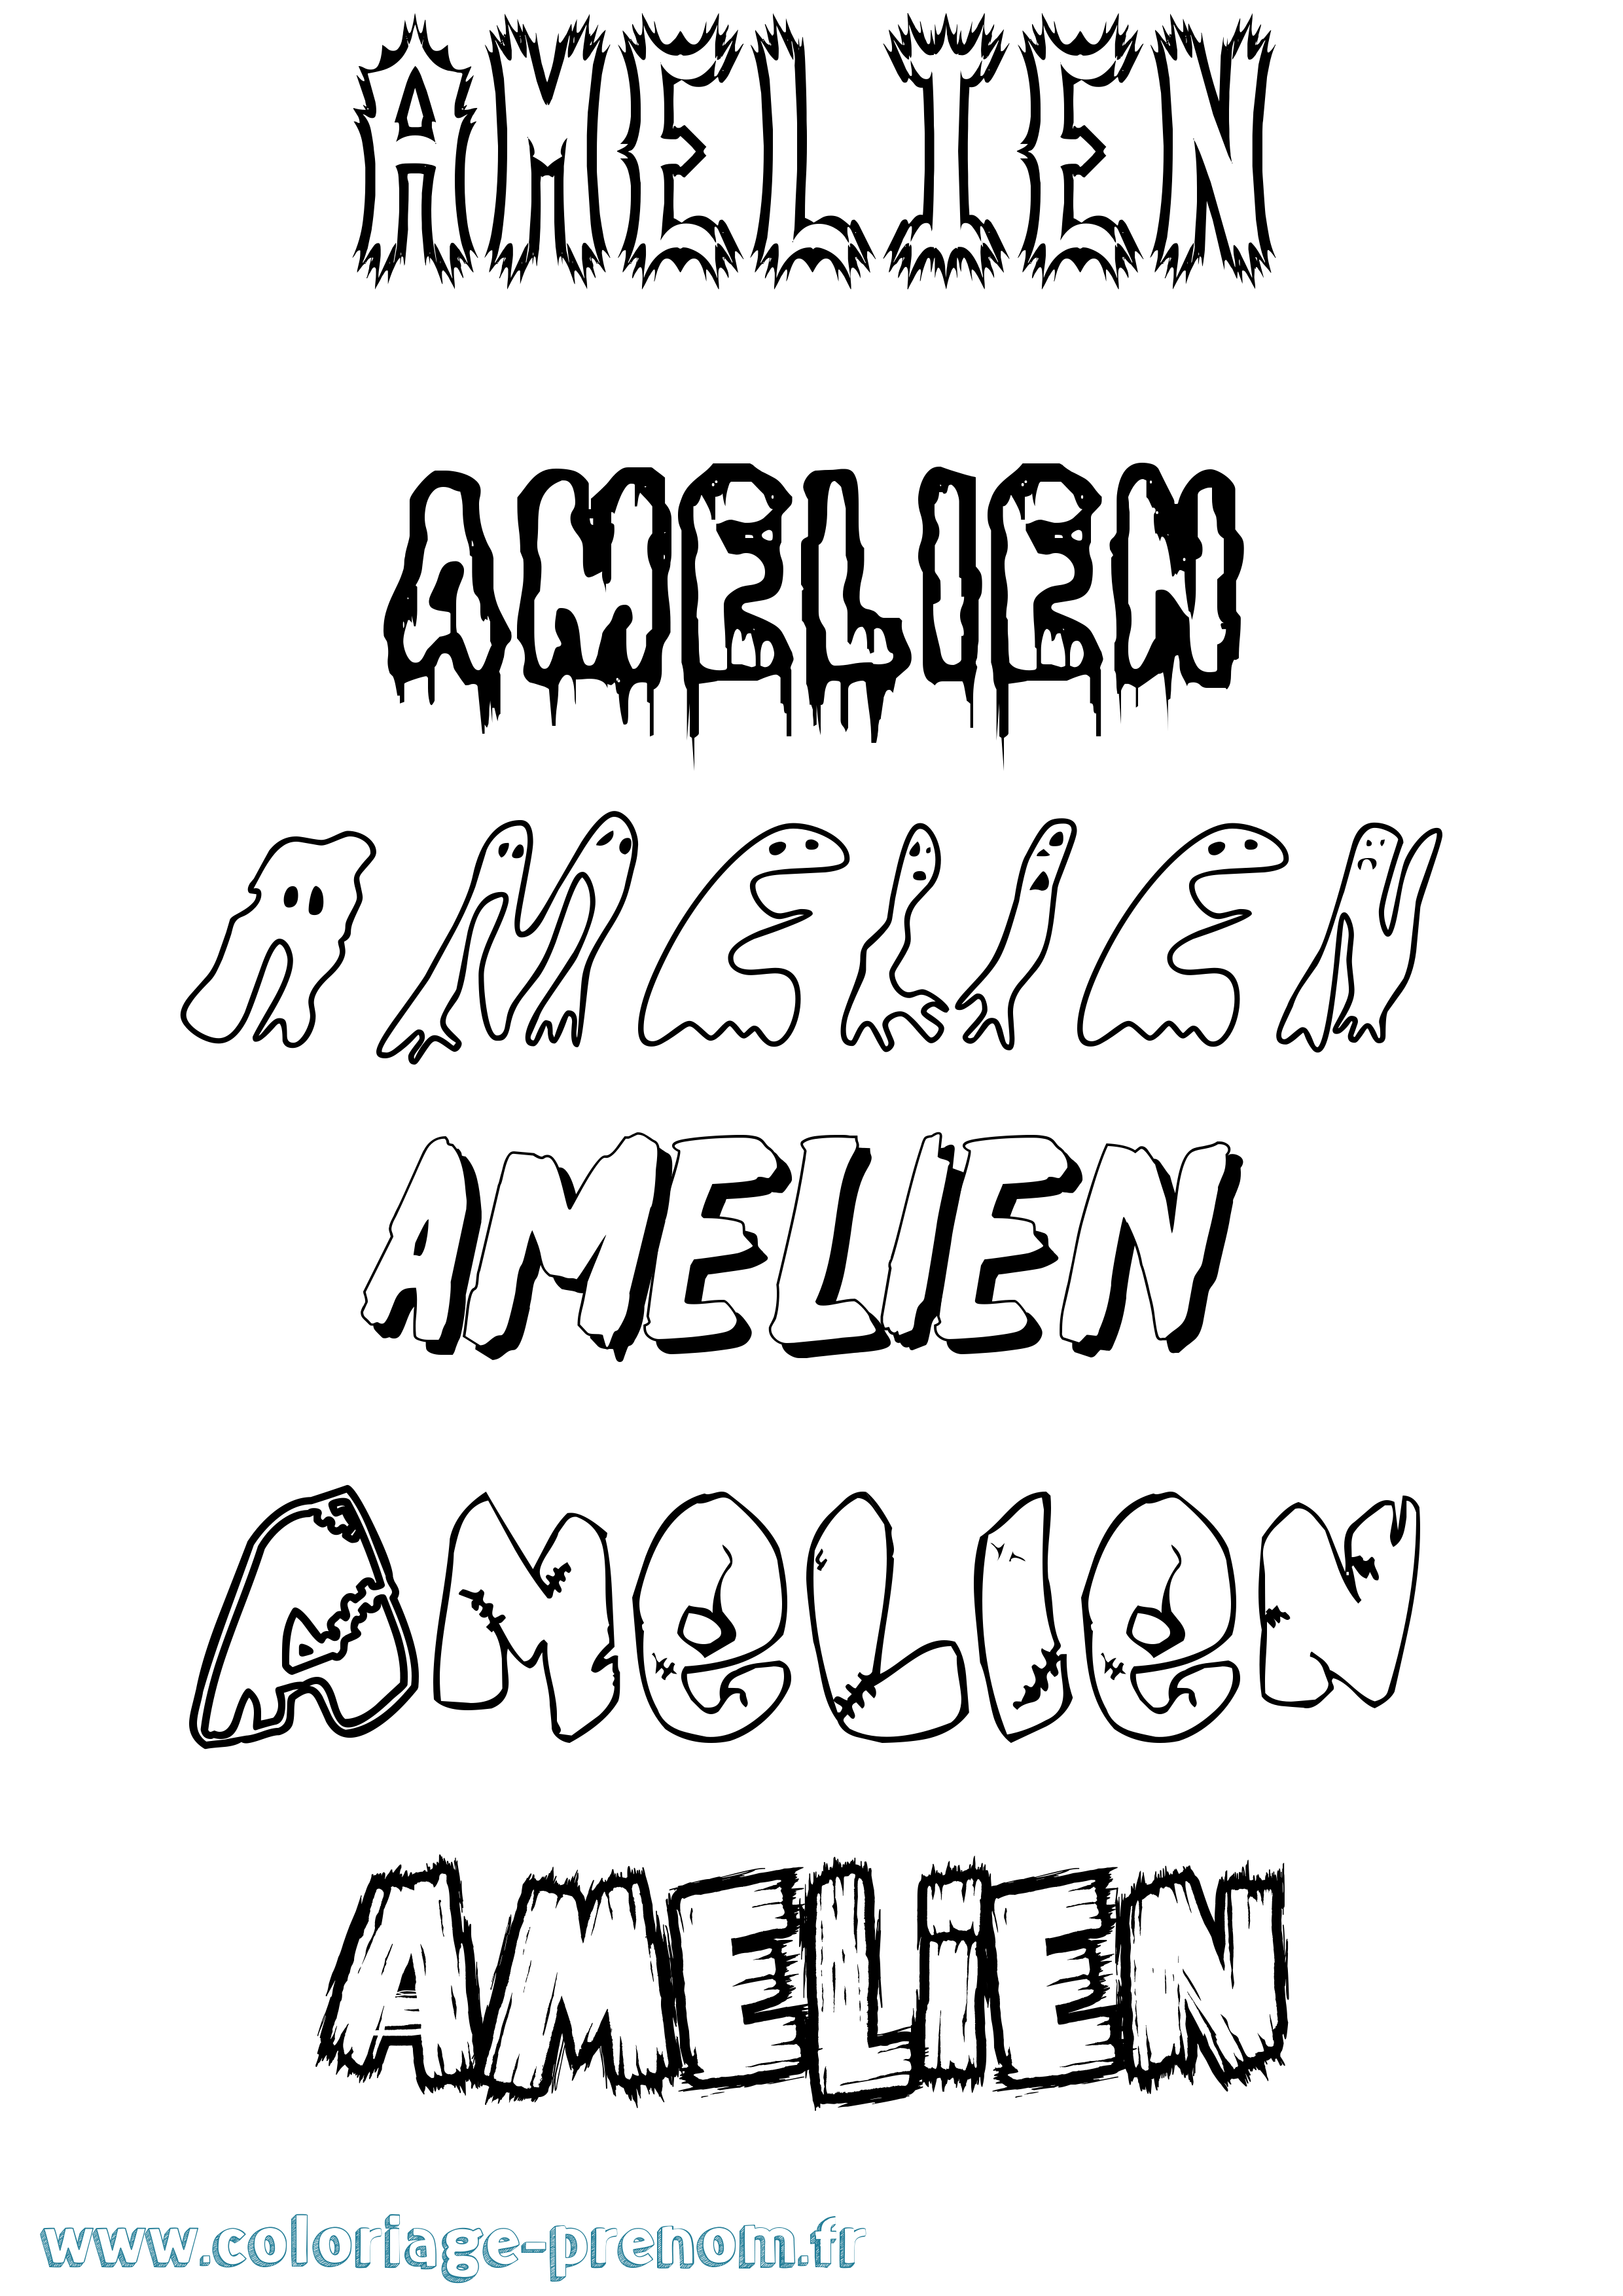 Coloriage prénom Amelien Frisson